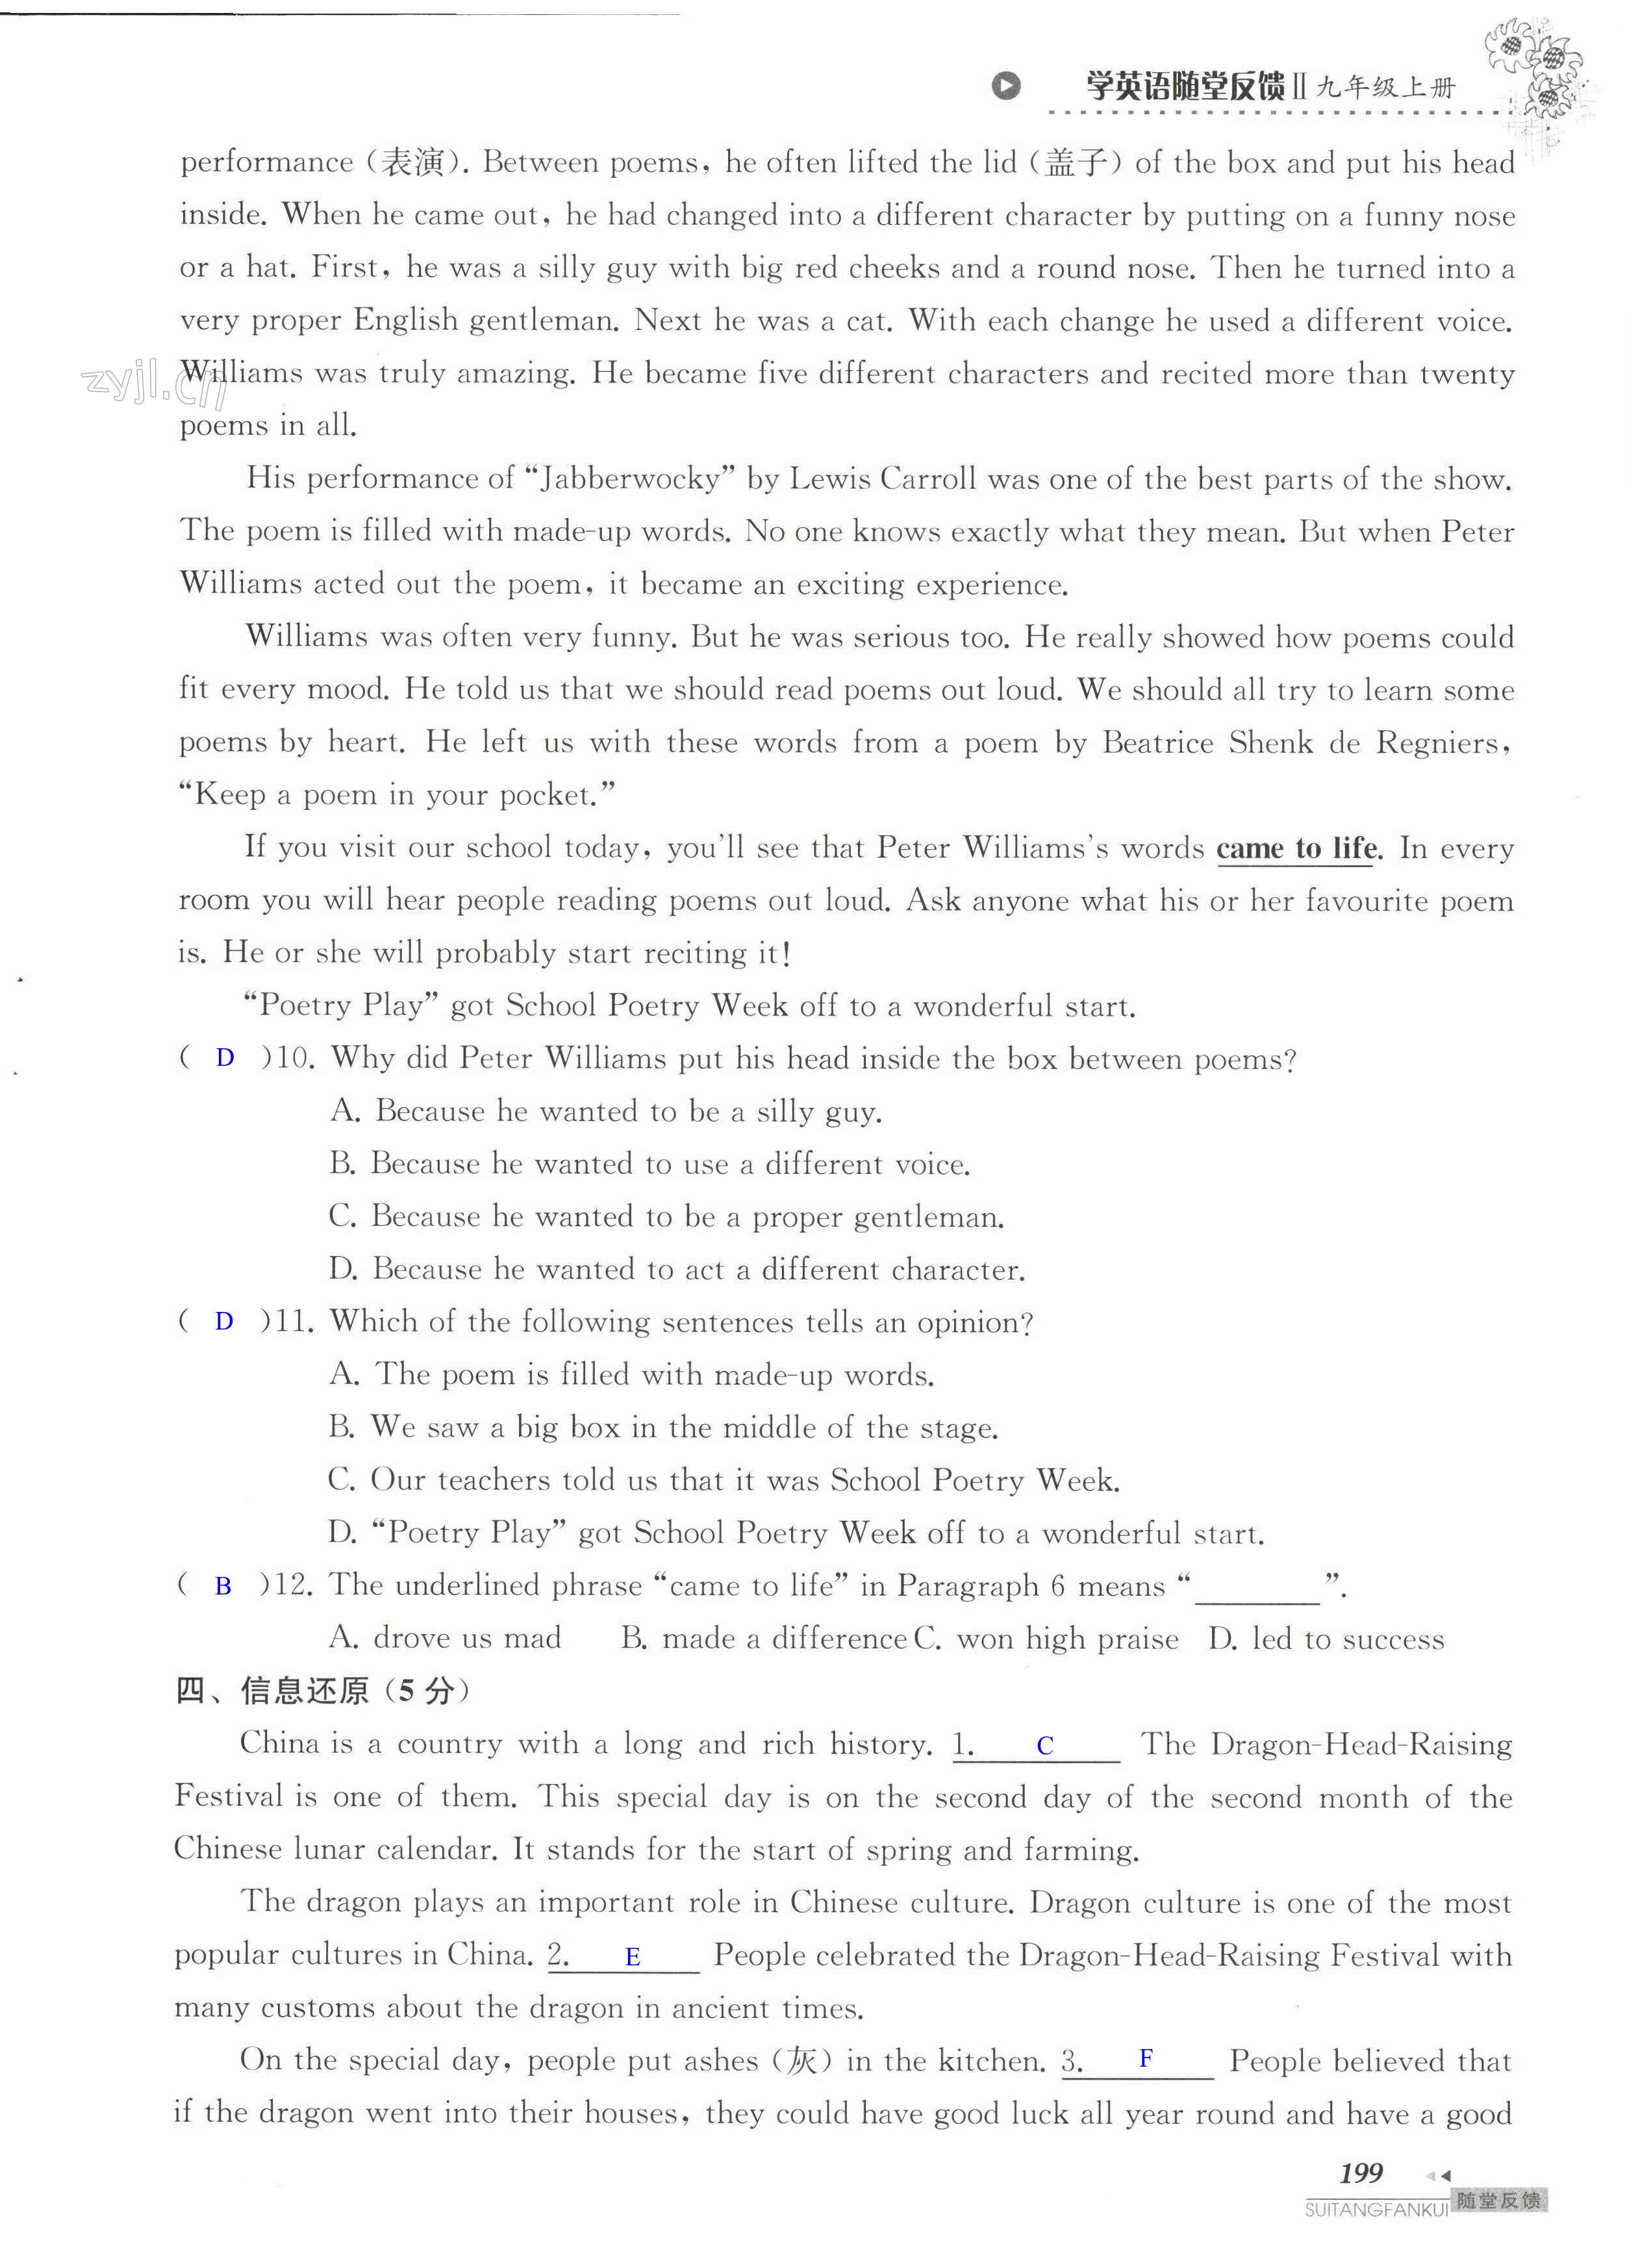 单元综合测试卷 Test for Unit 6 of 9A - 第199页